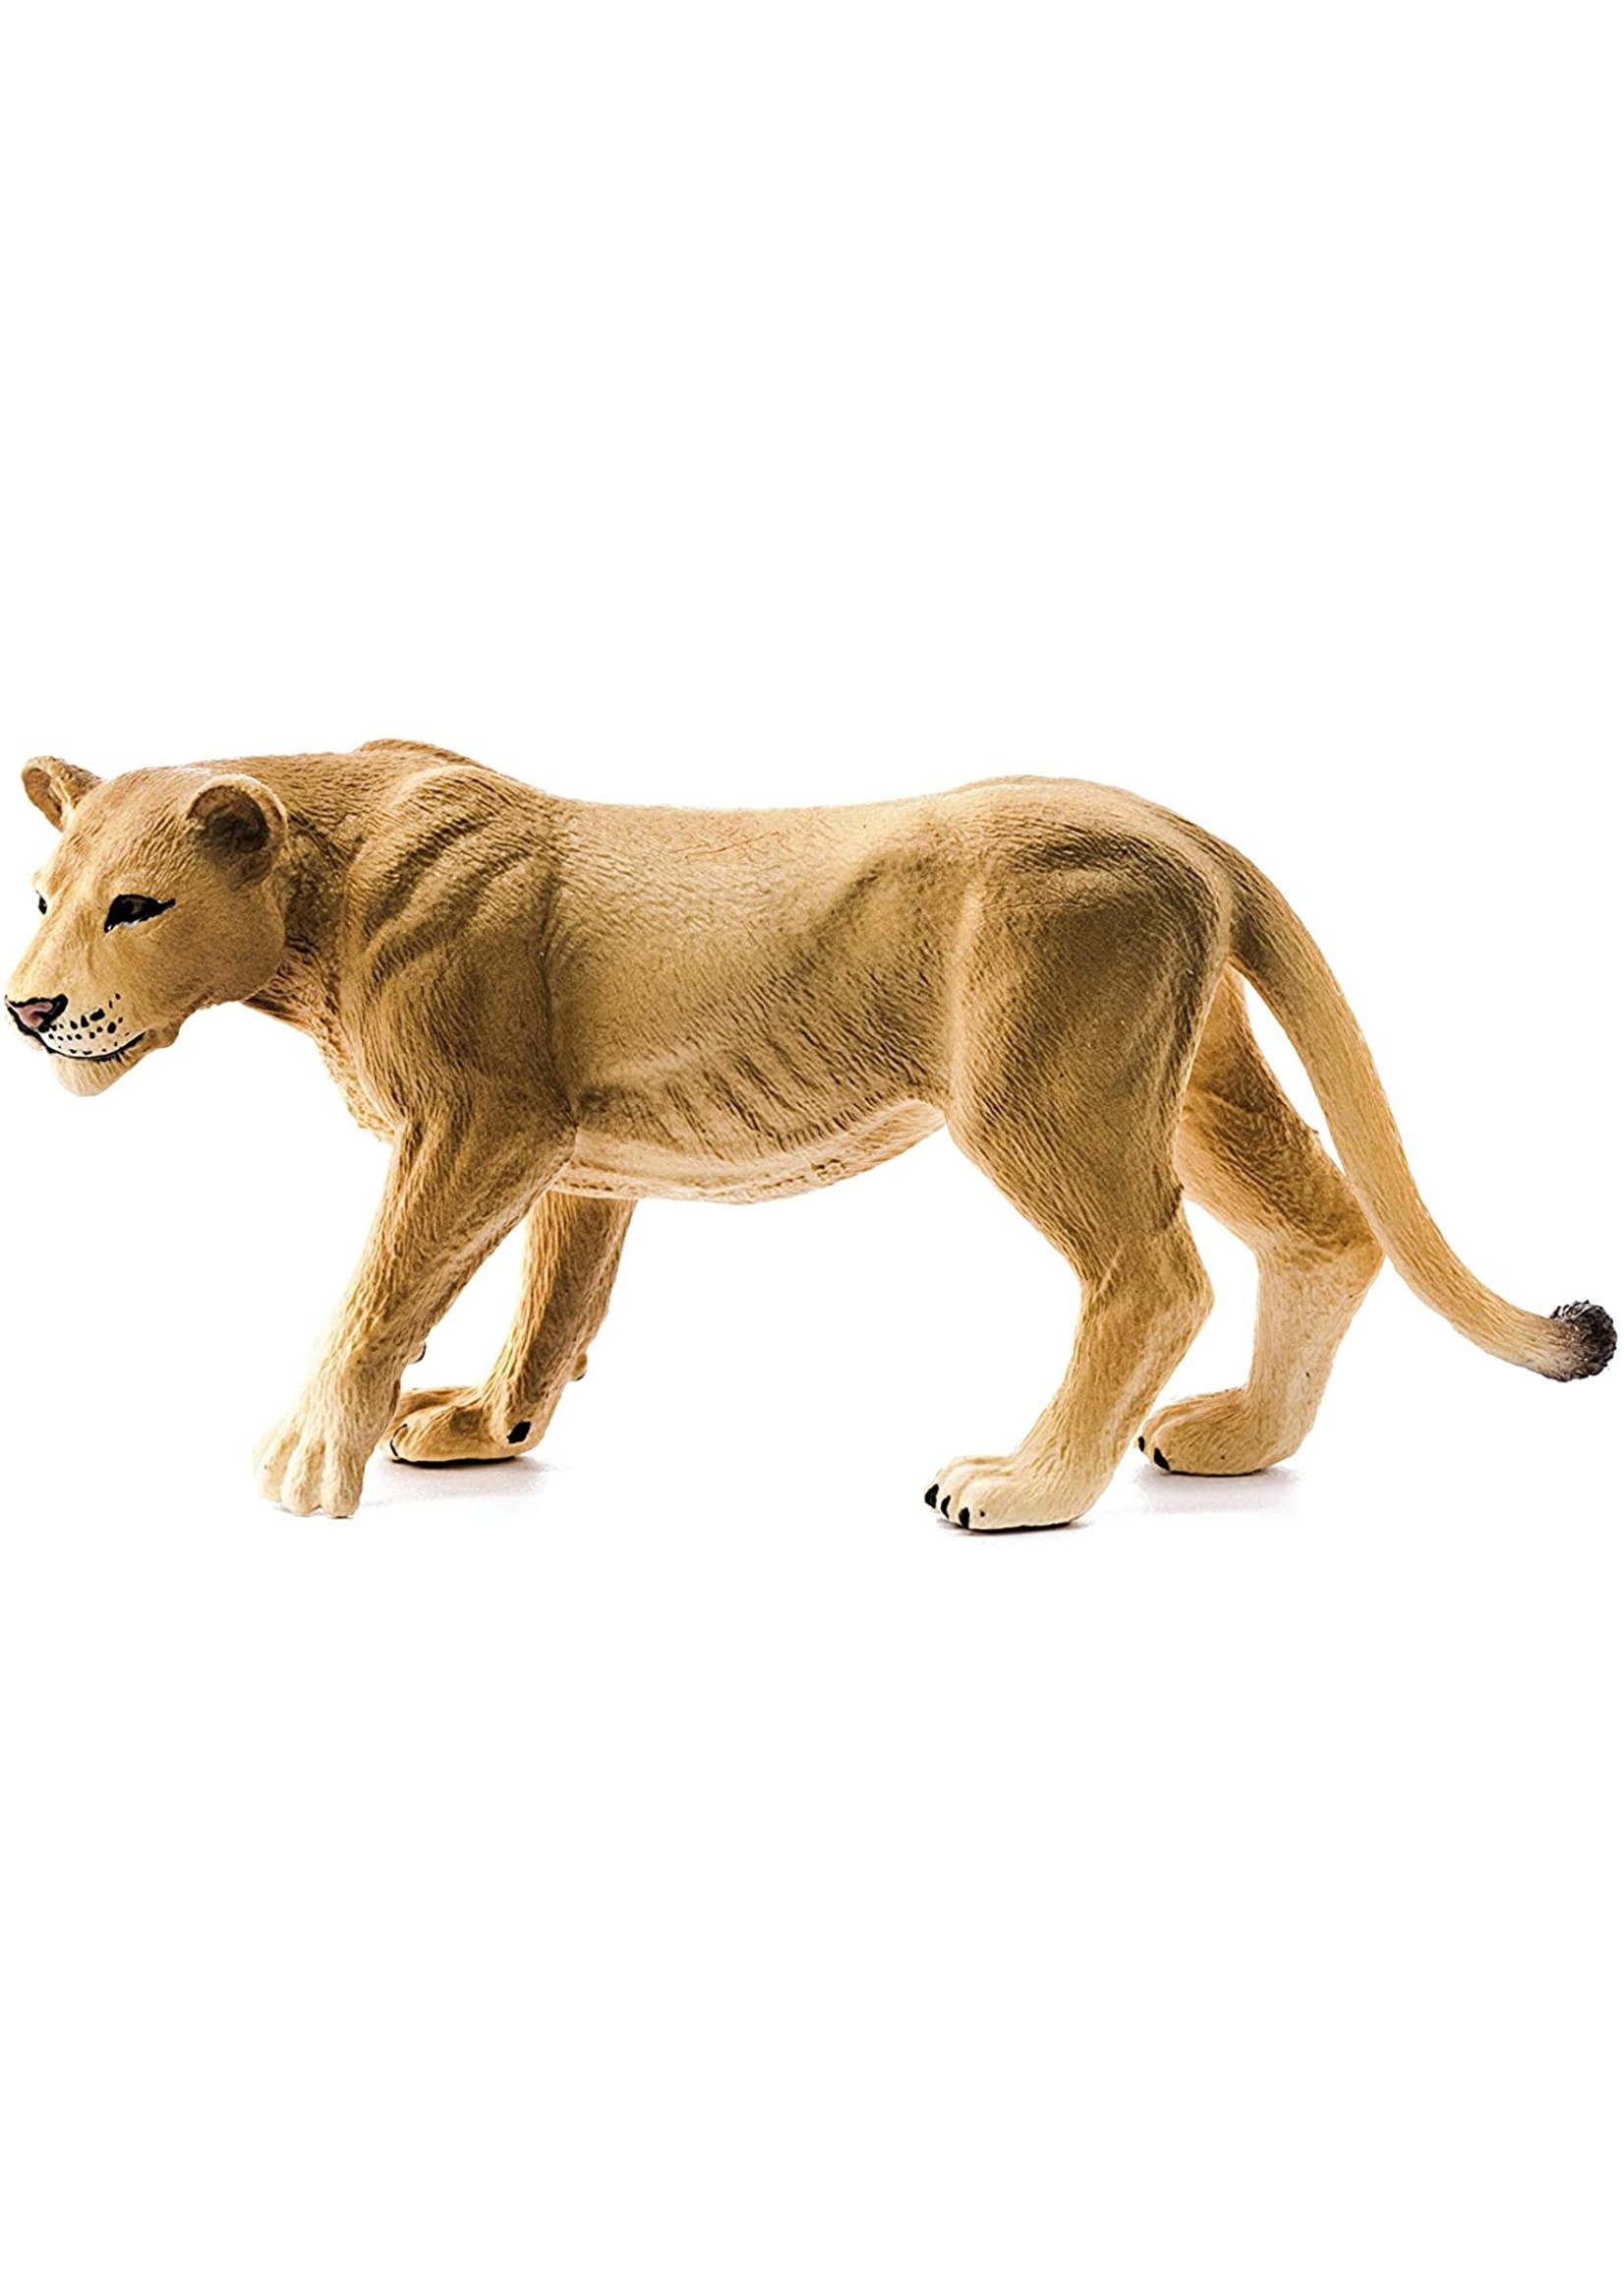 Schleich 14825 - Lioness